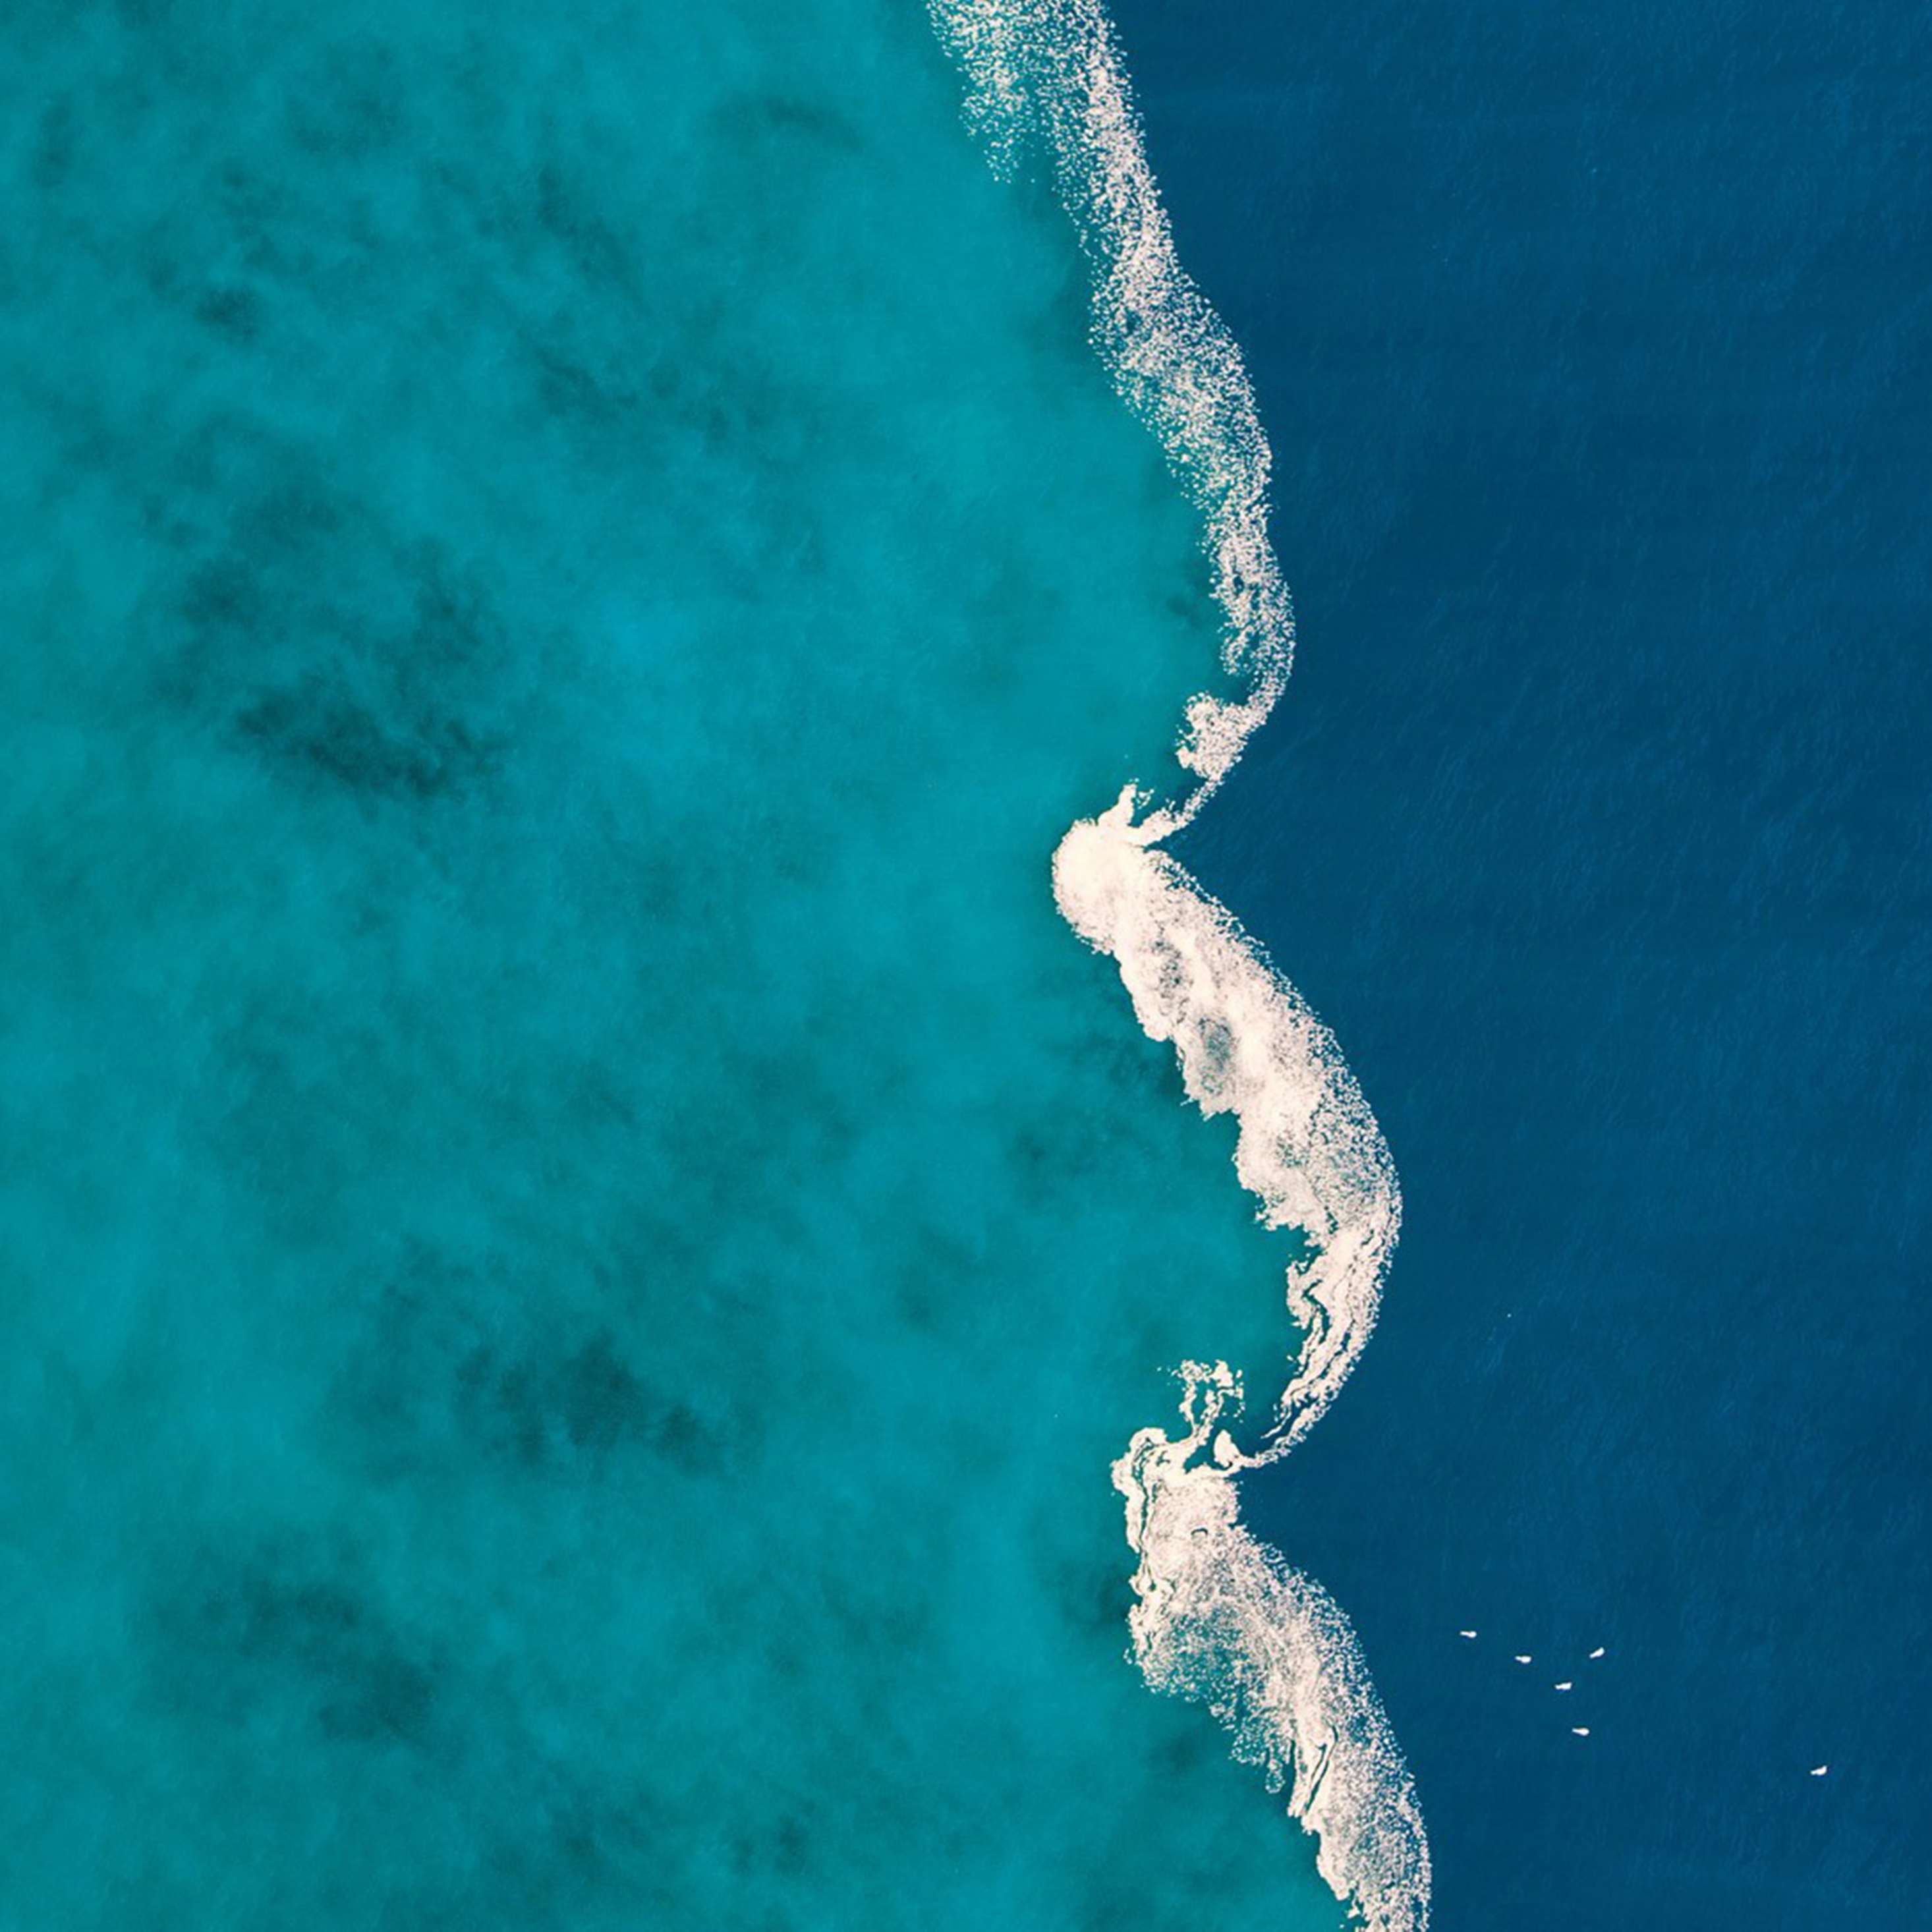 Индийский океан соленый. Карибское море Атлантический океан. Галоклин Гибралтар. Море вид сверху. Океан вид сверху.